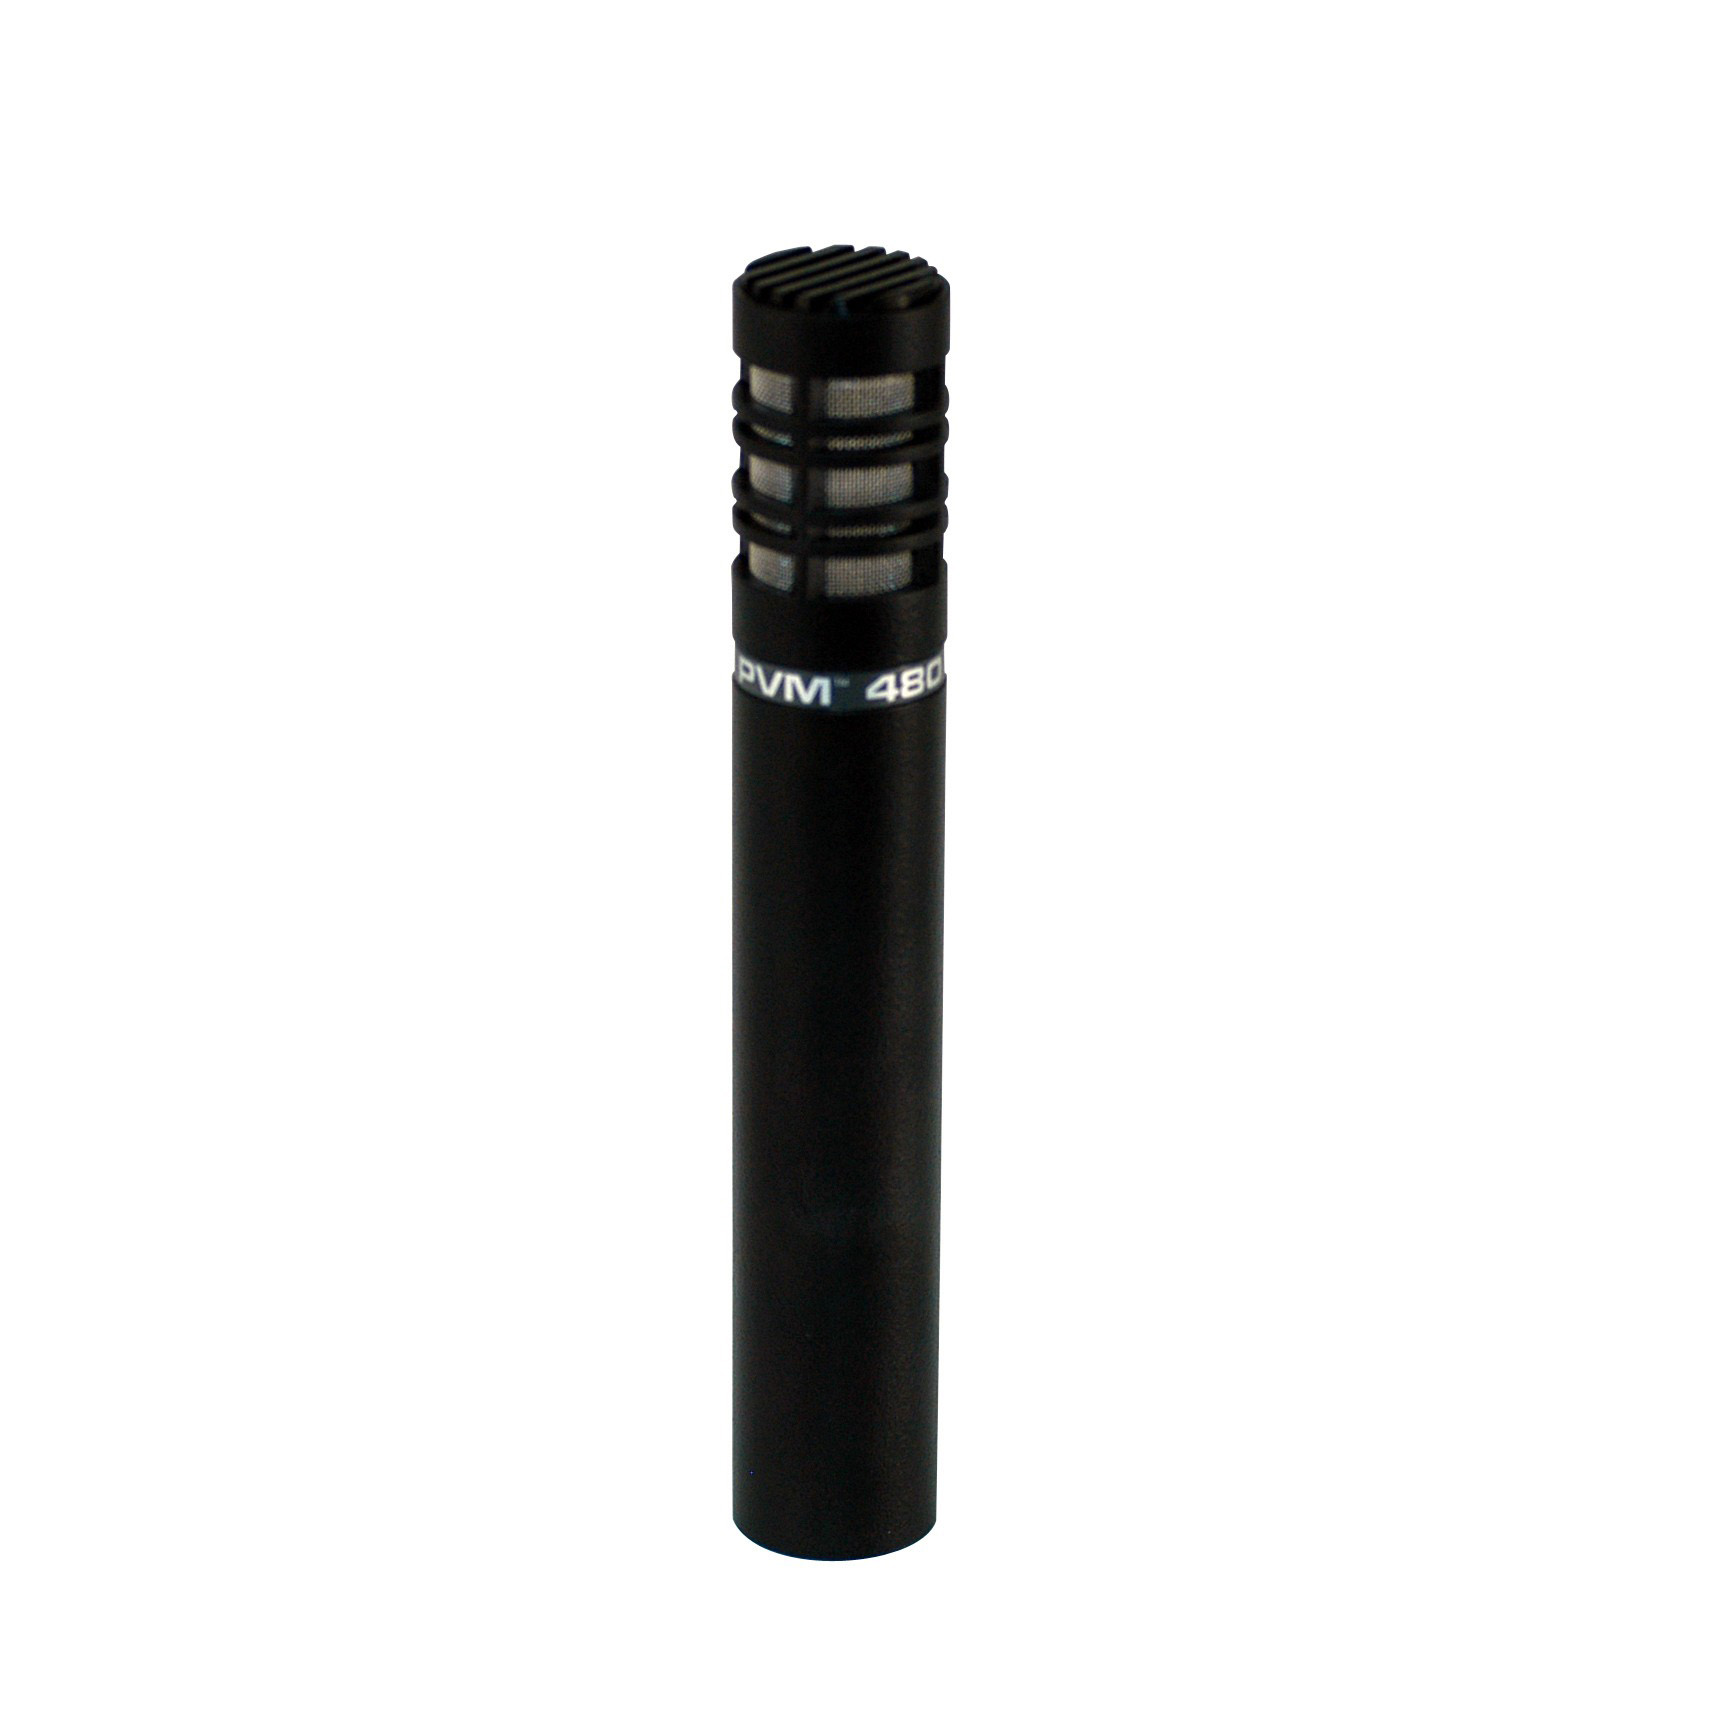 Peavey PVM 480 - Black Конденсаторные микрофоны